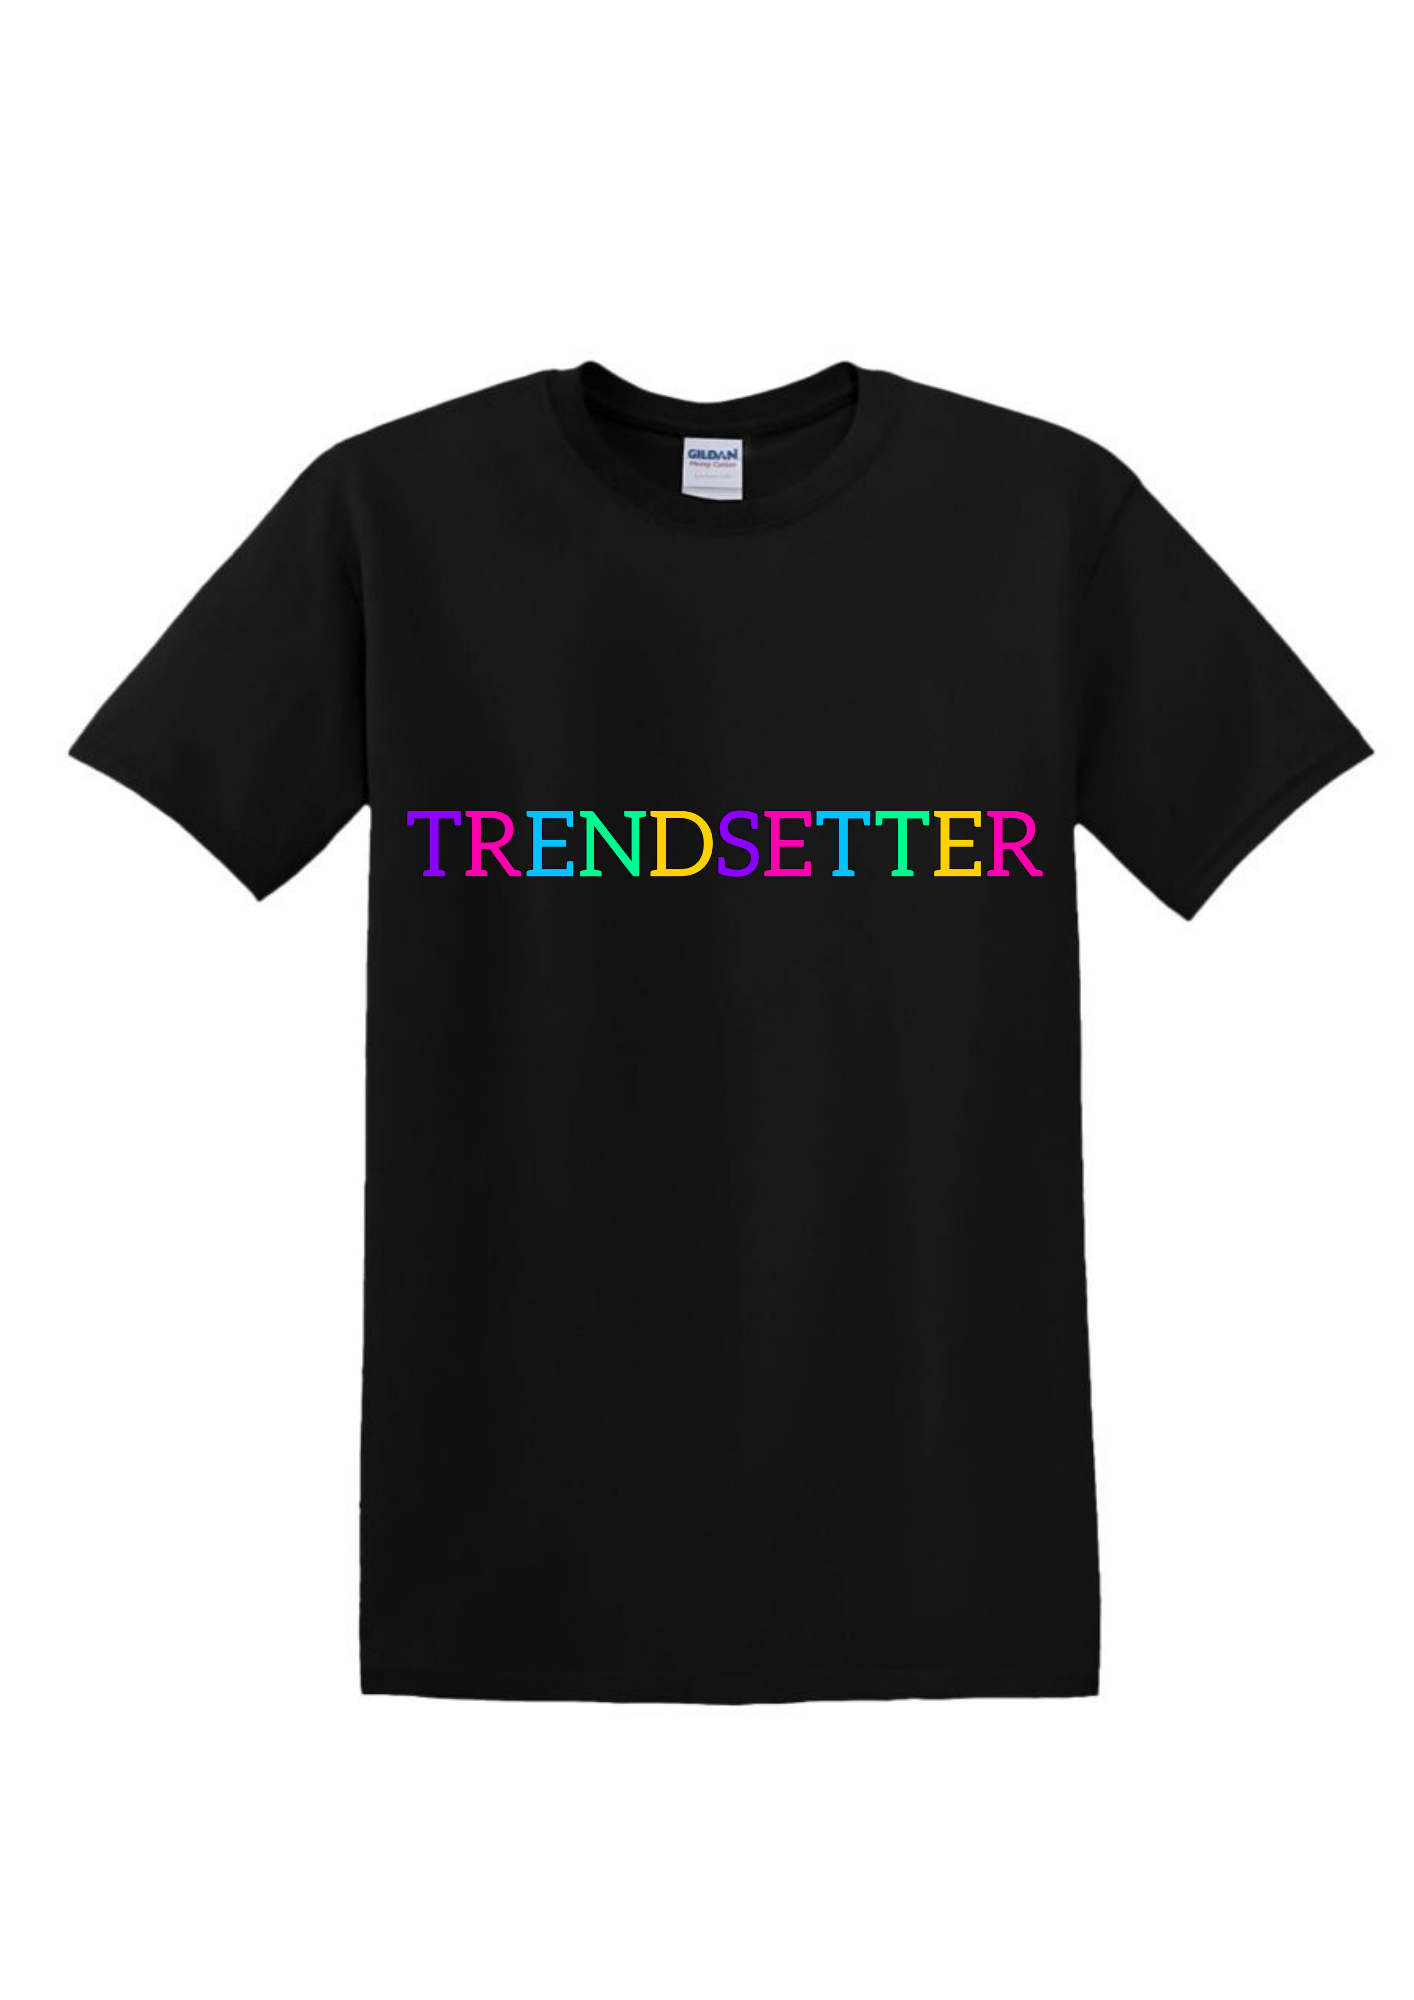 Trendsetter Unisex T-Shirt for Sale